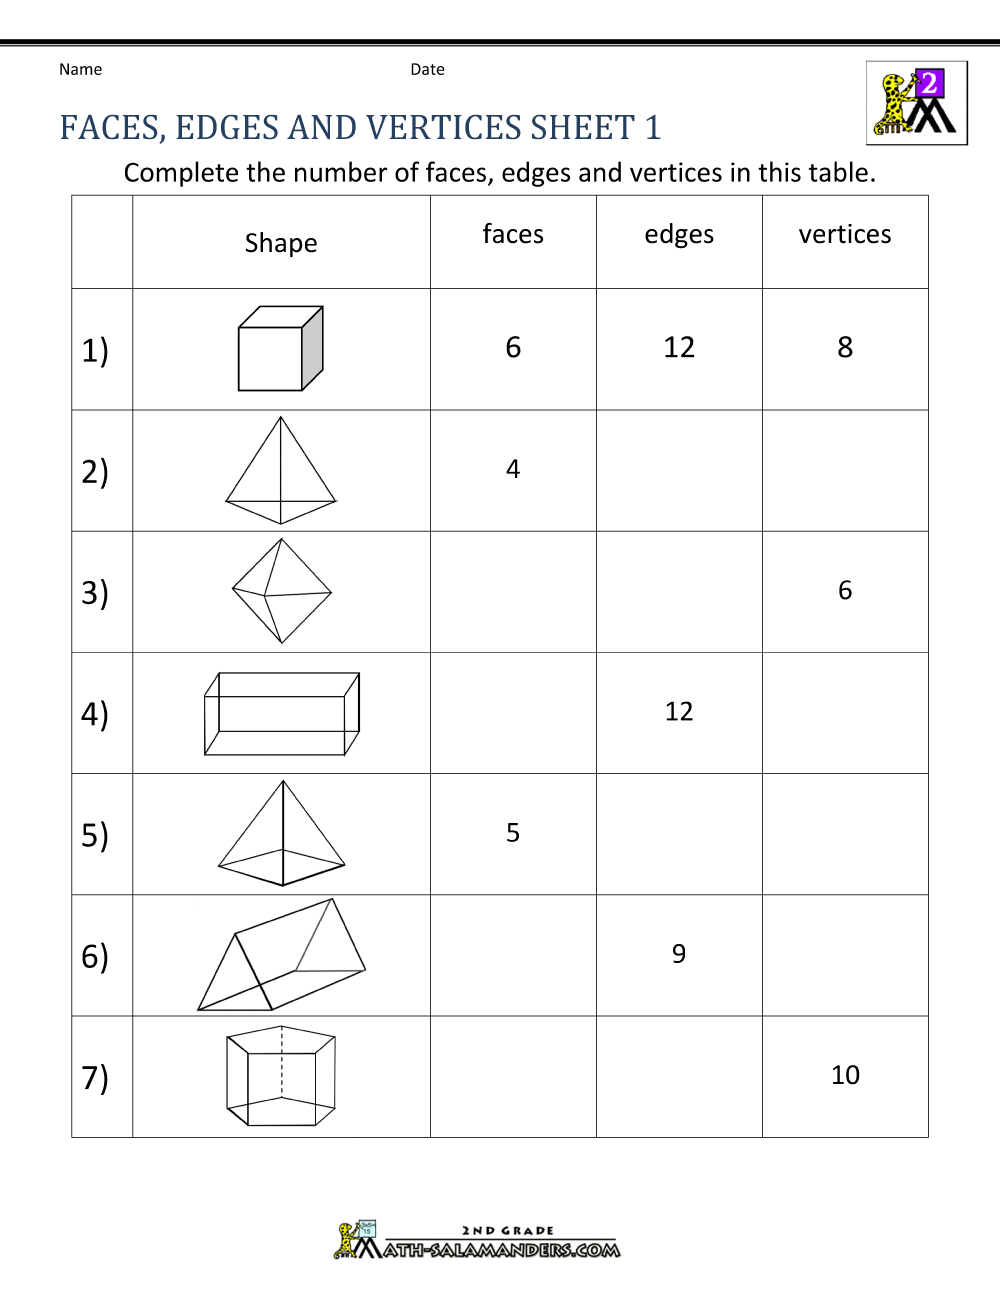 3d Shapes Worksheets 2nd Grade 3d Shapes Worksheets 2nd Grade Piper Abigail